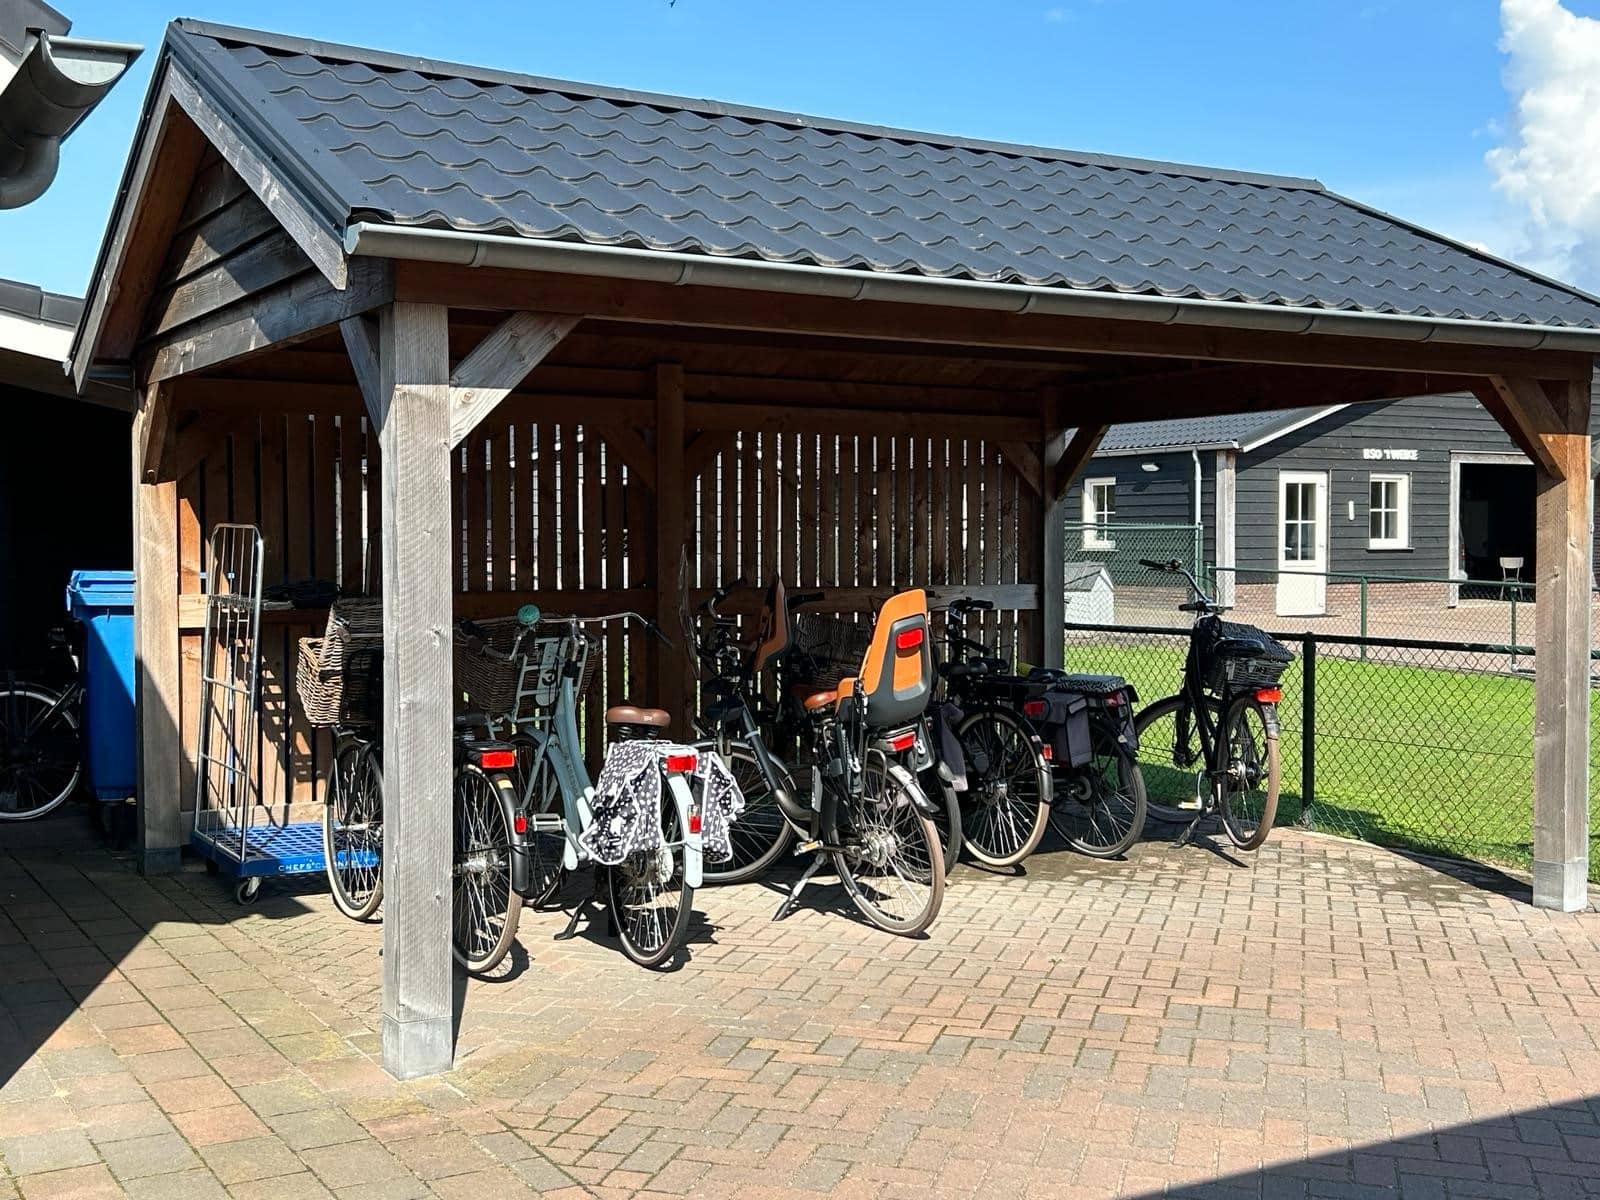 Uitgevoerd project door tuinhuiscentrum in Deurne, het is een fietsenberging waarvan het hout zwart is gebeitst de fietsberging heeft een puntdak met zwarte dakpannen